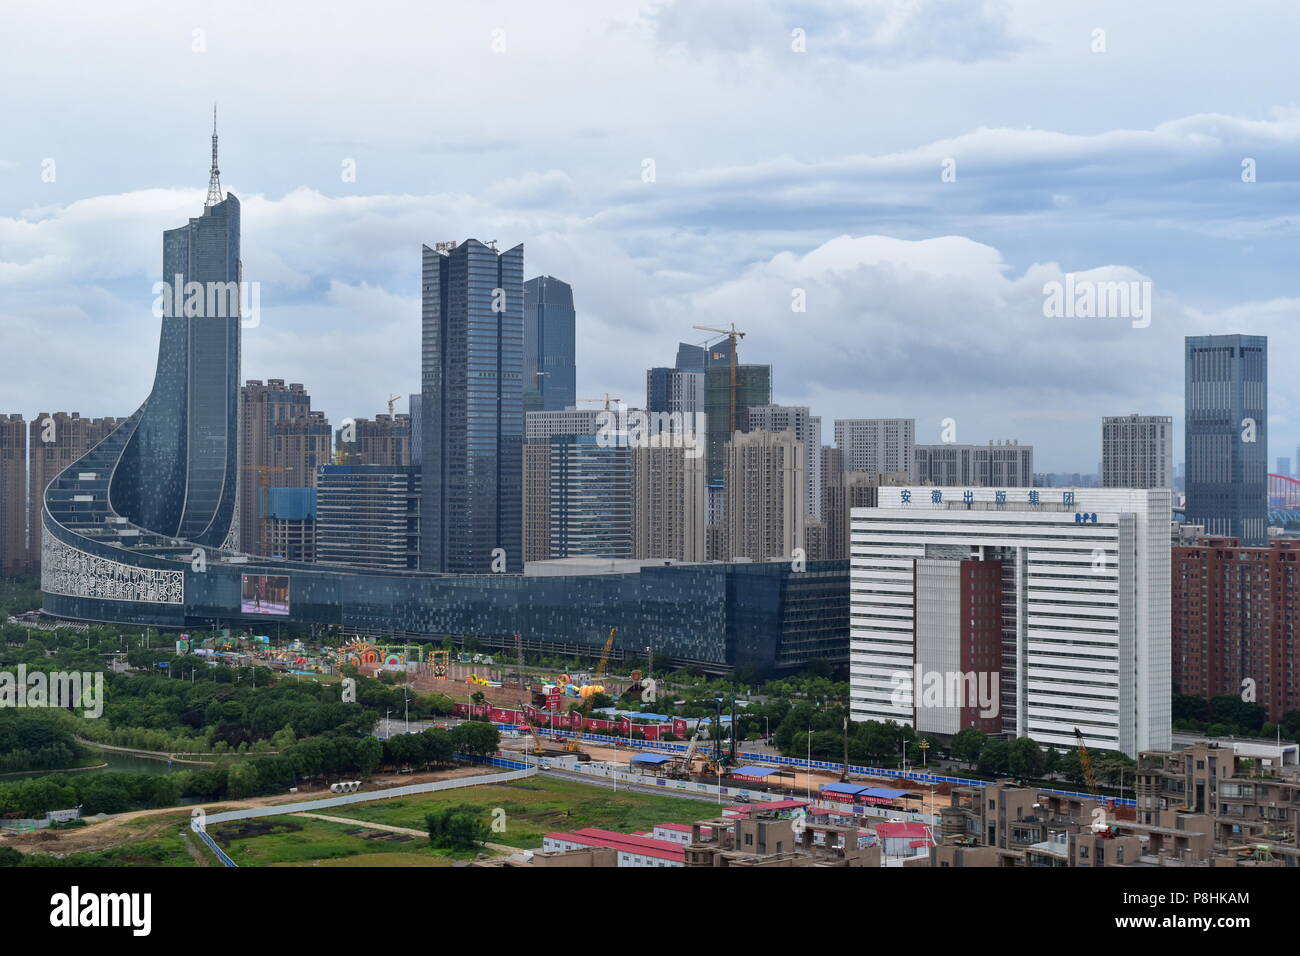 Moderne chinesische Skyline der Stadt in schnellem Wachstum - Hefei, China Stockfoto